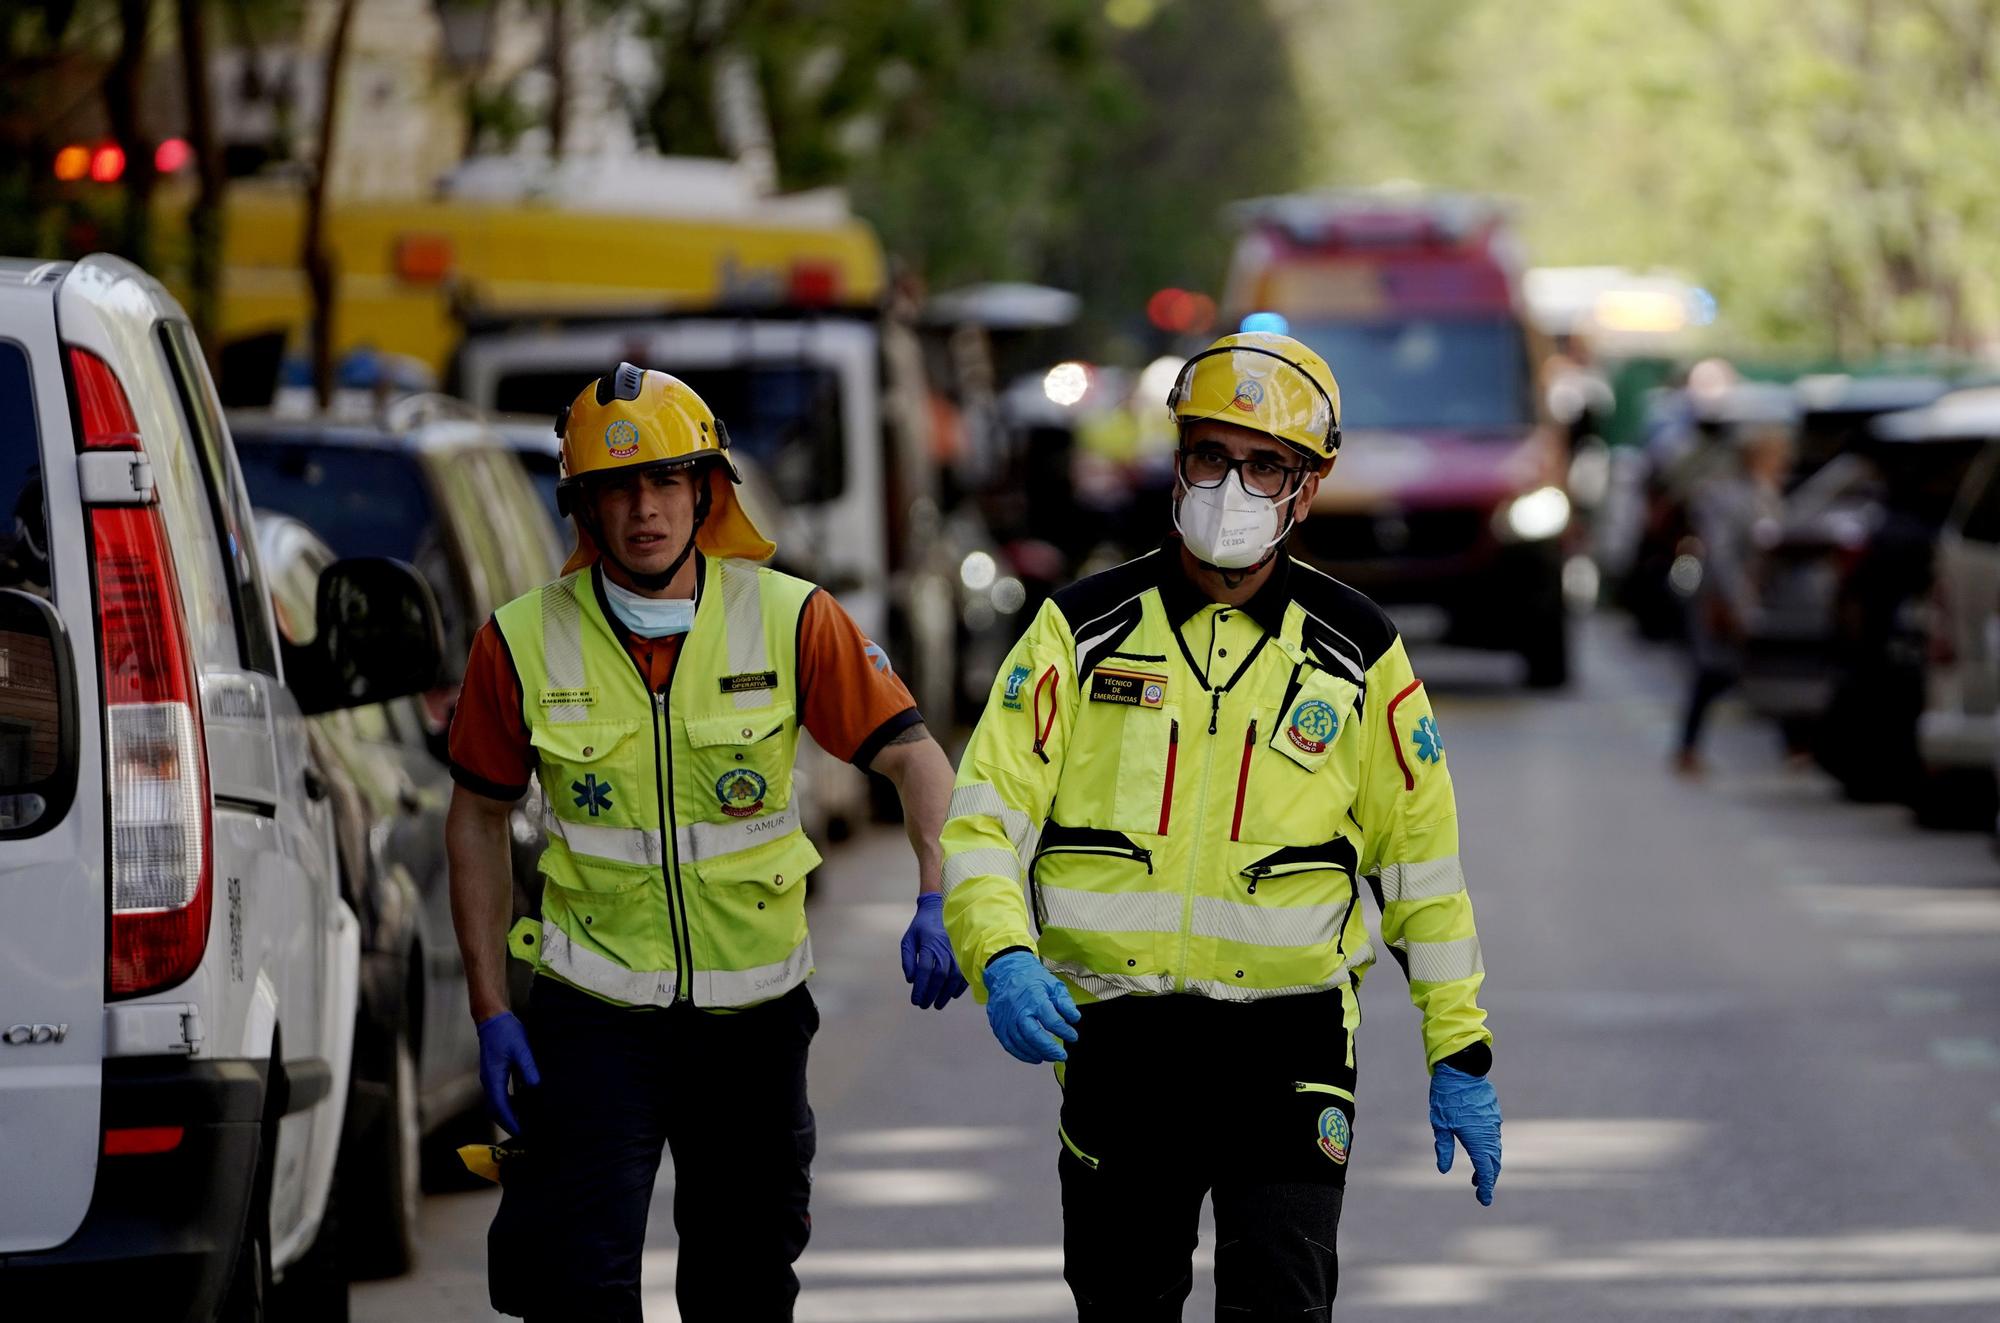 Varios heridos en una explosión en una vivienda del barrio de Salamanca de Madrid